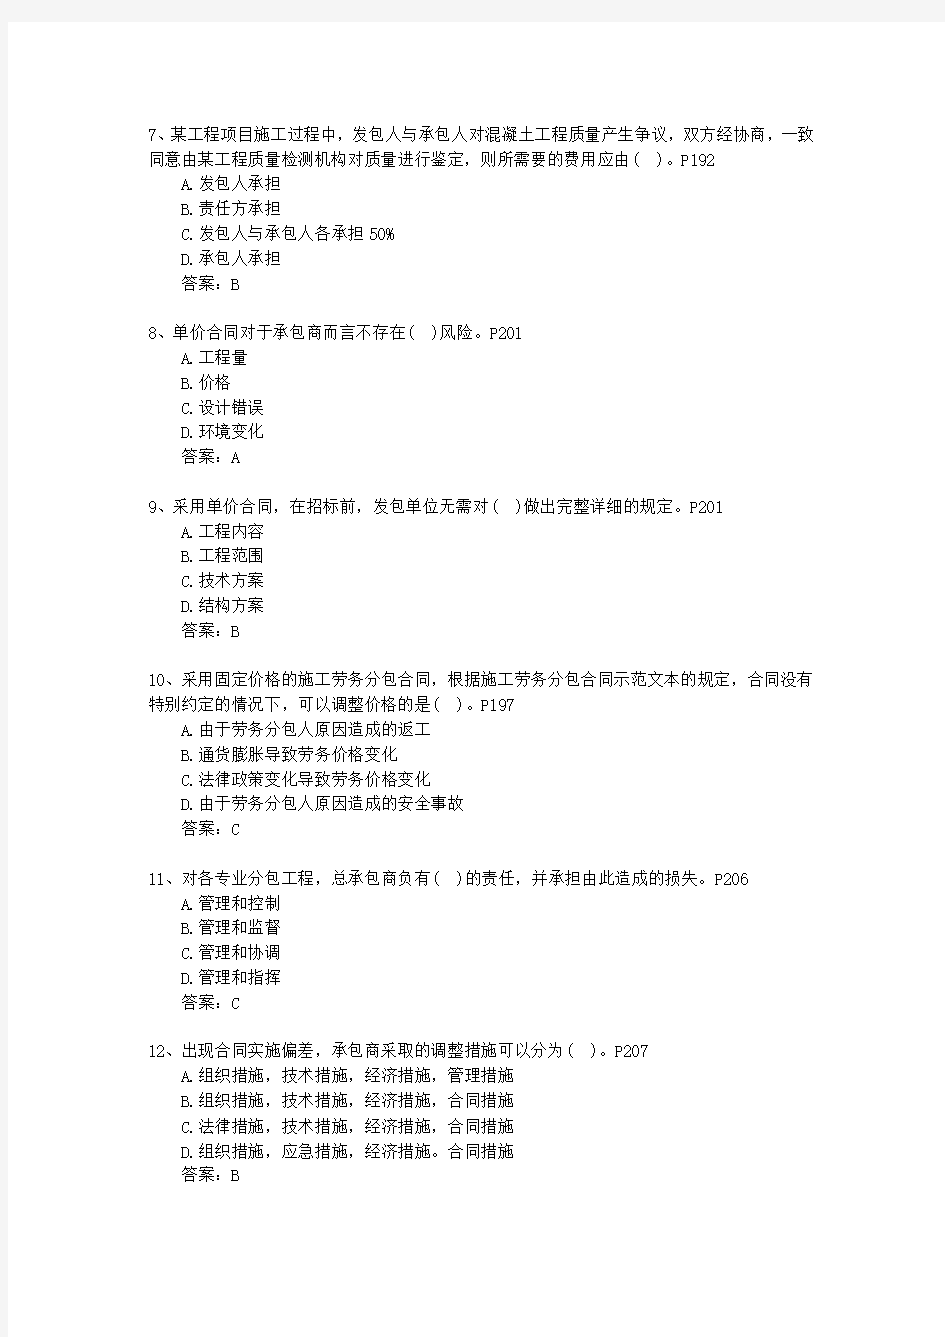 2012三级河北省建造师最新考试试题库(完整版)